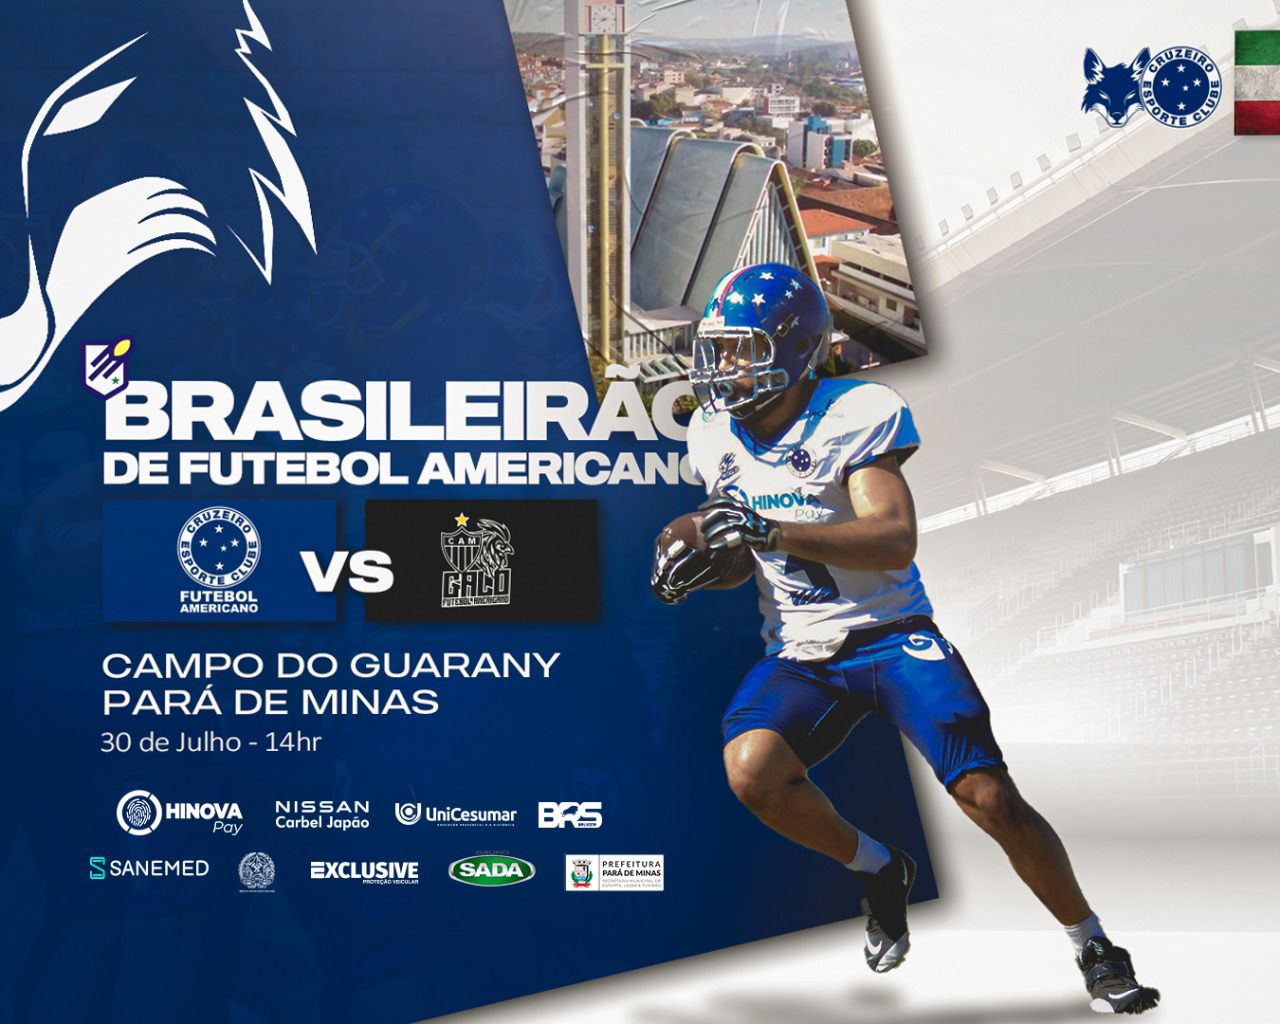 Clássico entre Cruzeiro FA e Atlético FA acontece em Pará de Minas neste sábado (30)